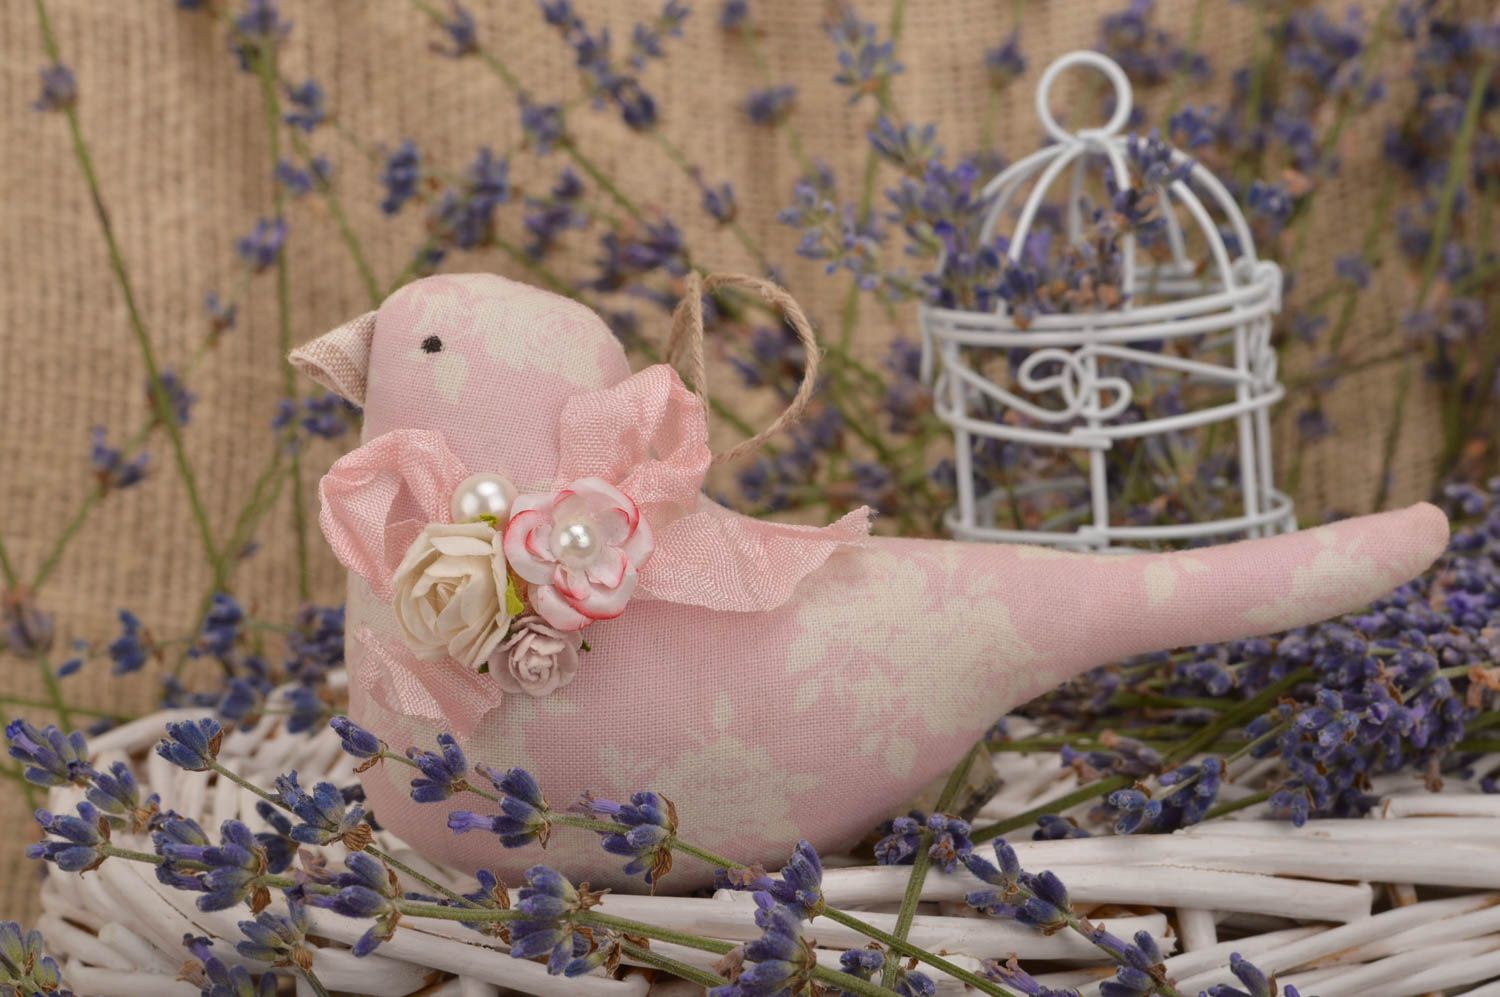 Интерьерная подвеска птичка розовая из хлопка на стену ручной работы для декора фото 1